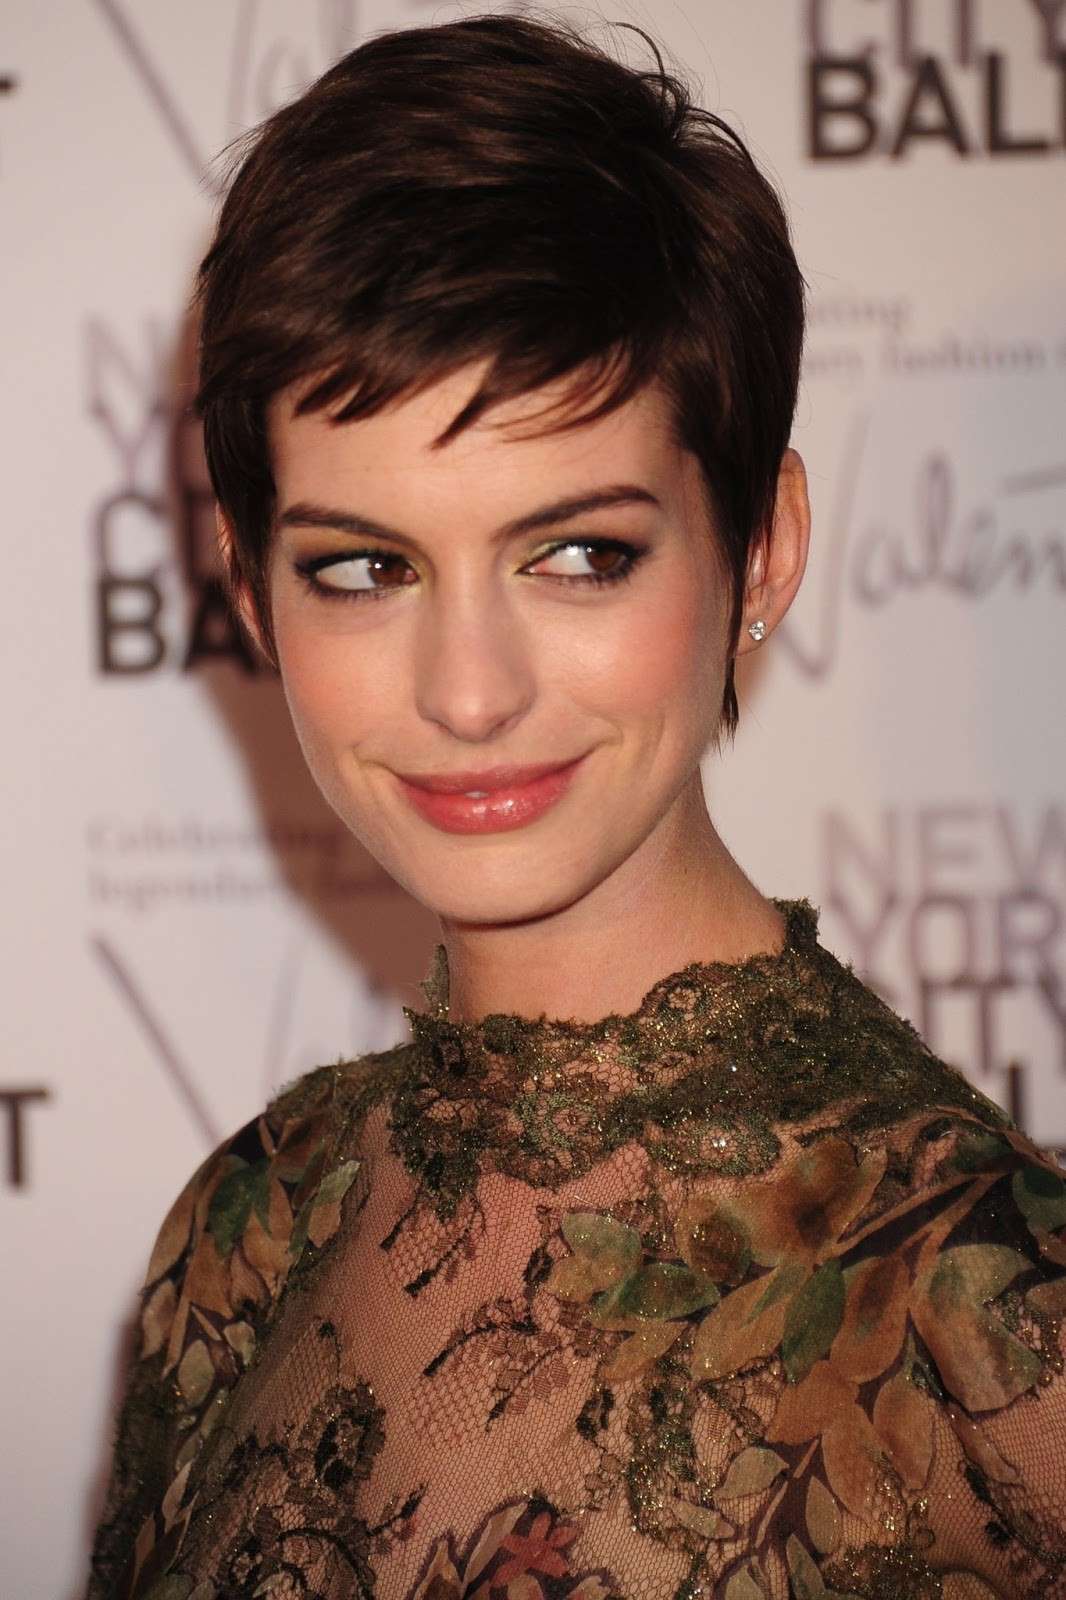 Trucco per occhi grandi: Make up Anne Hathaway